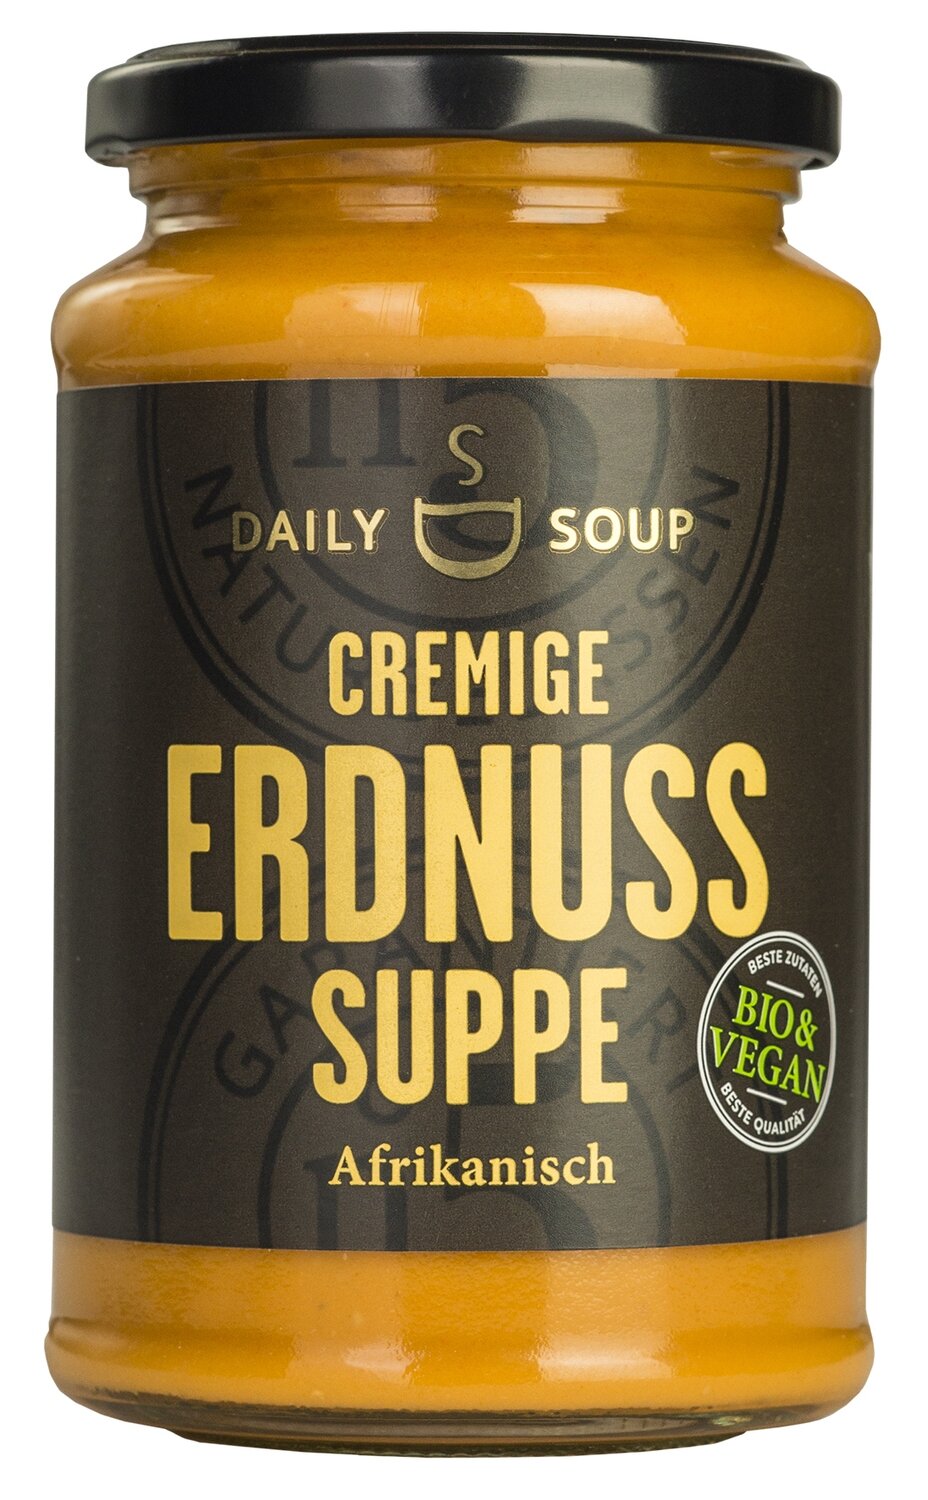 Daily Soup - Erdnuss